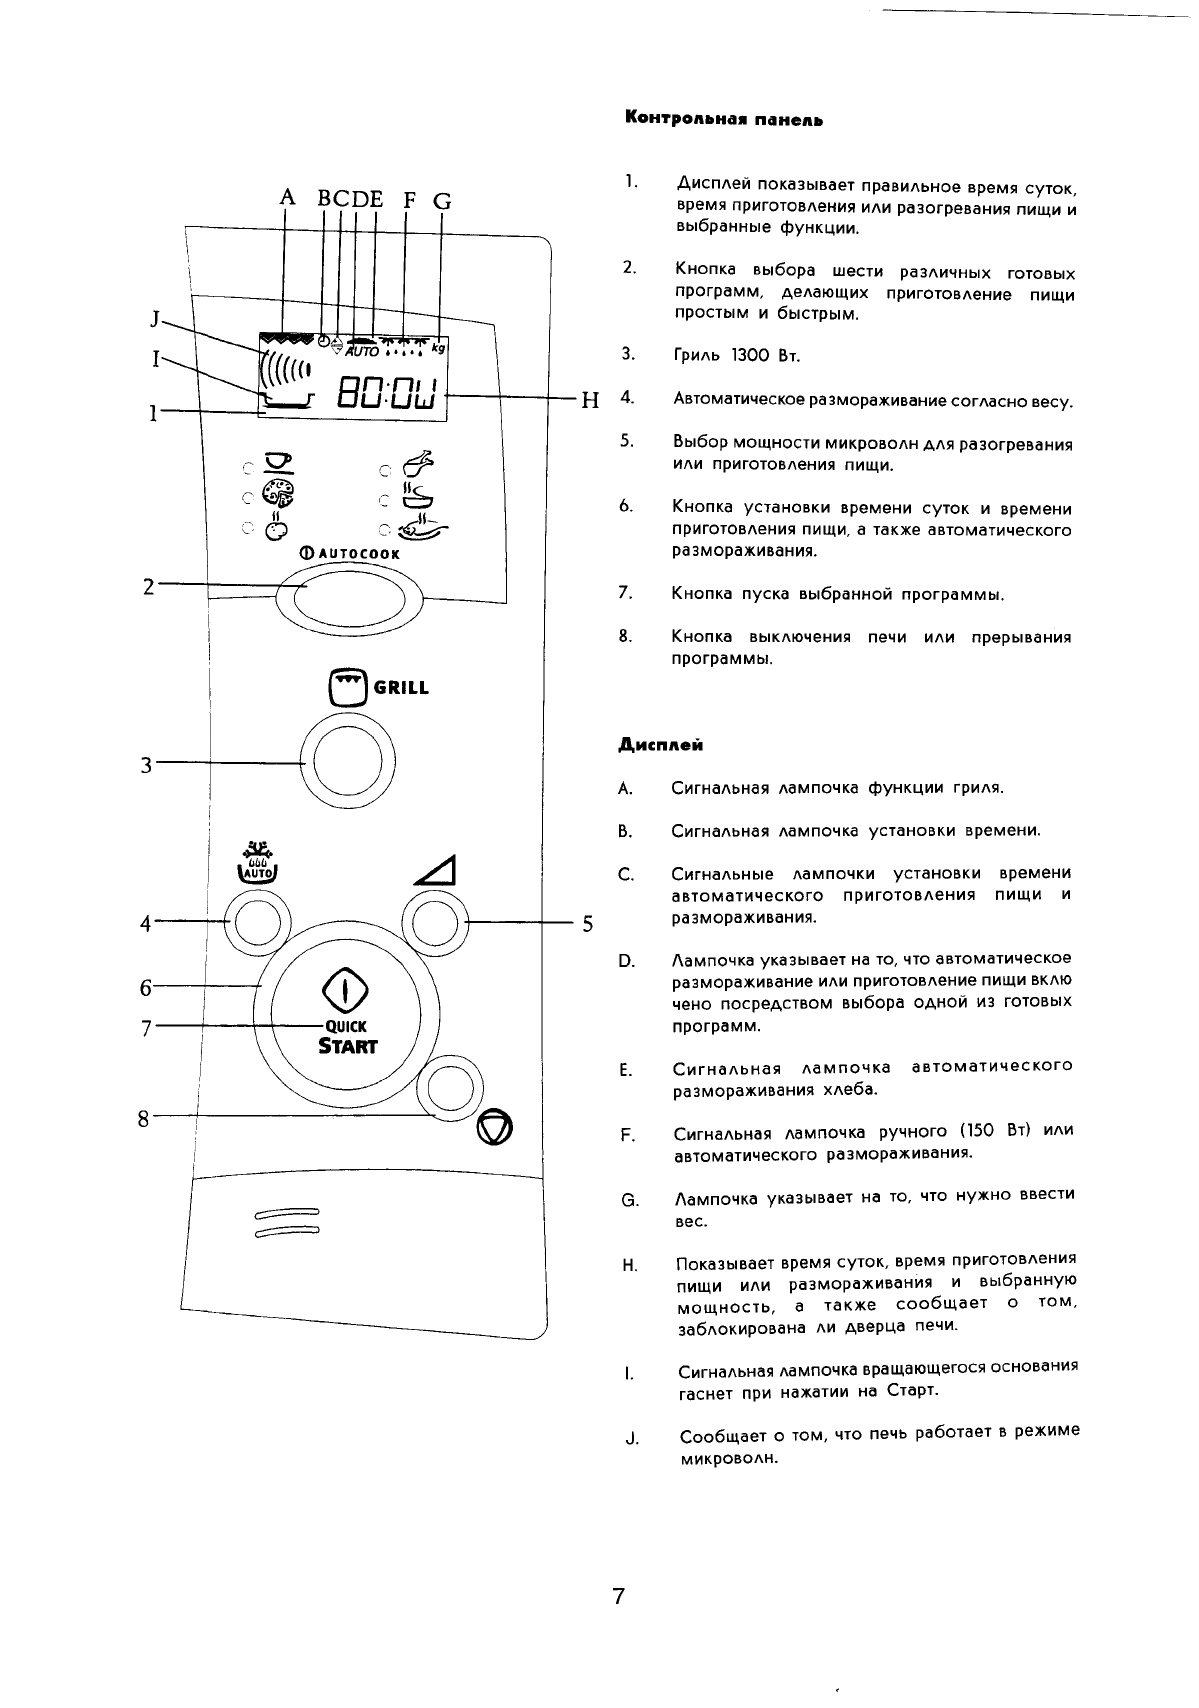 Микроволновая печь Electrolux инструкция